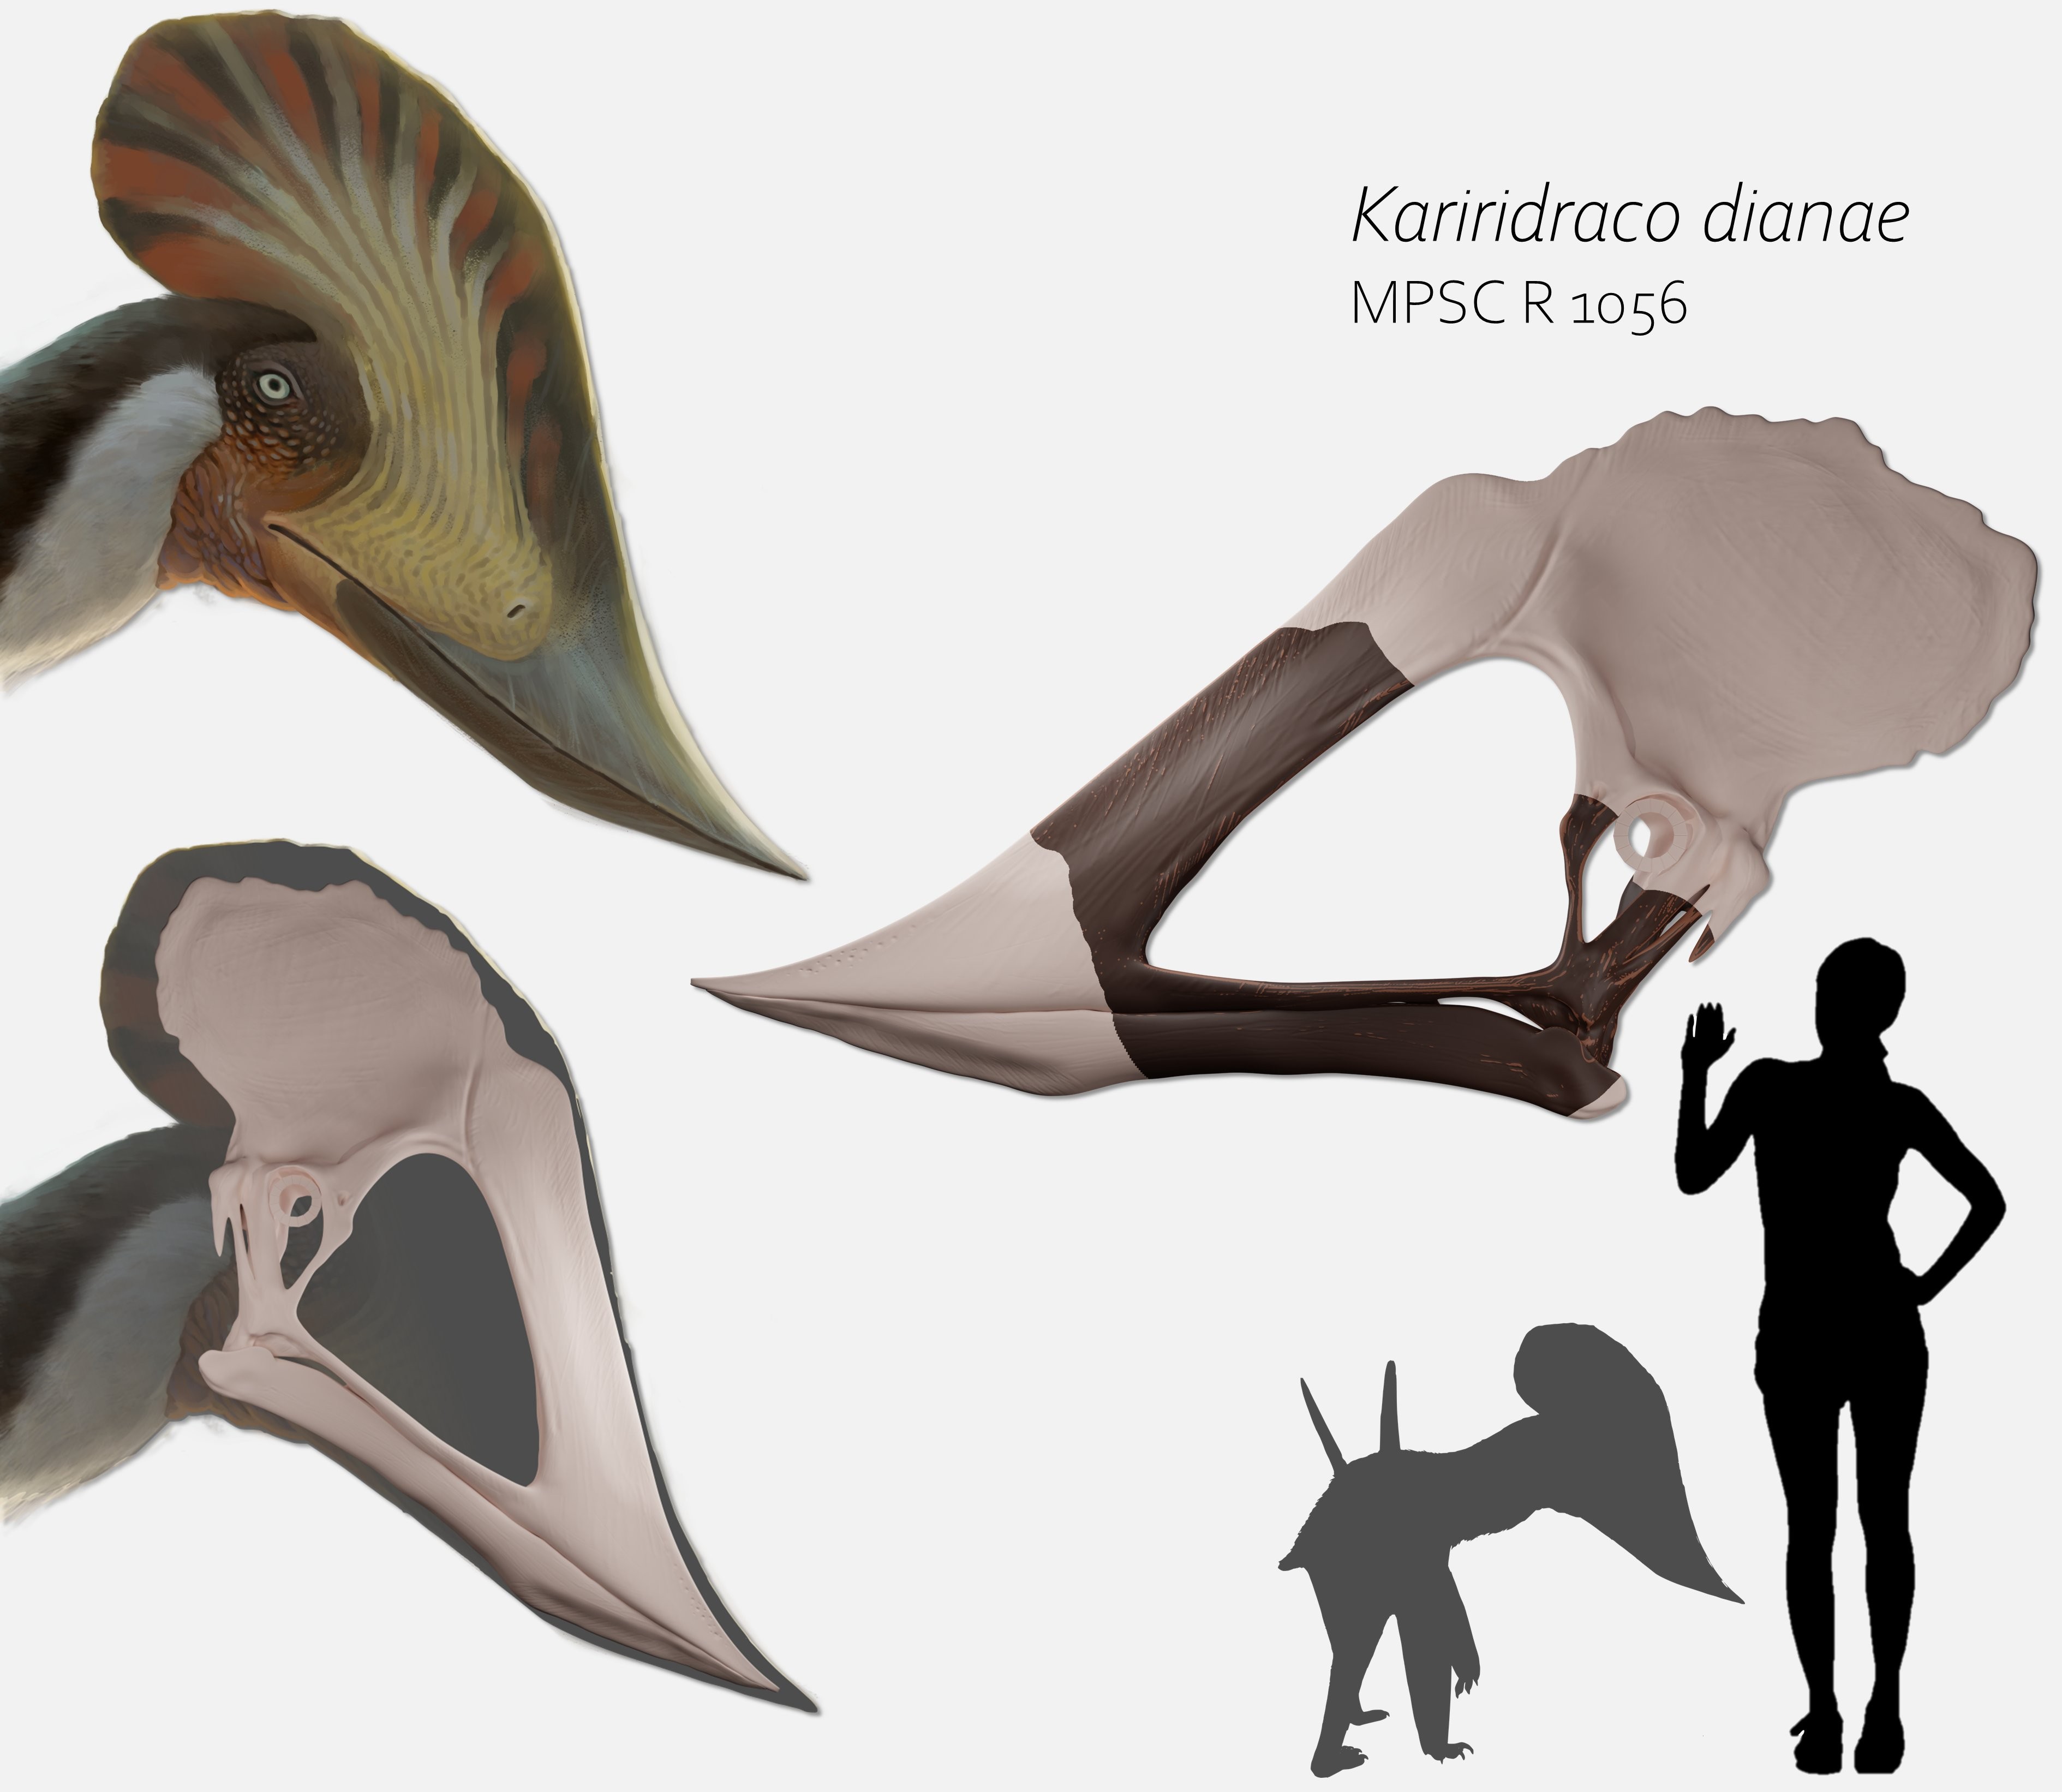 Pterossauro Kariridraco dianae pode ter tido até três metros de envergadura, segundo pesquisadores (Foto: Reprodução/Twitter/@FeliPinheir)